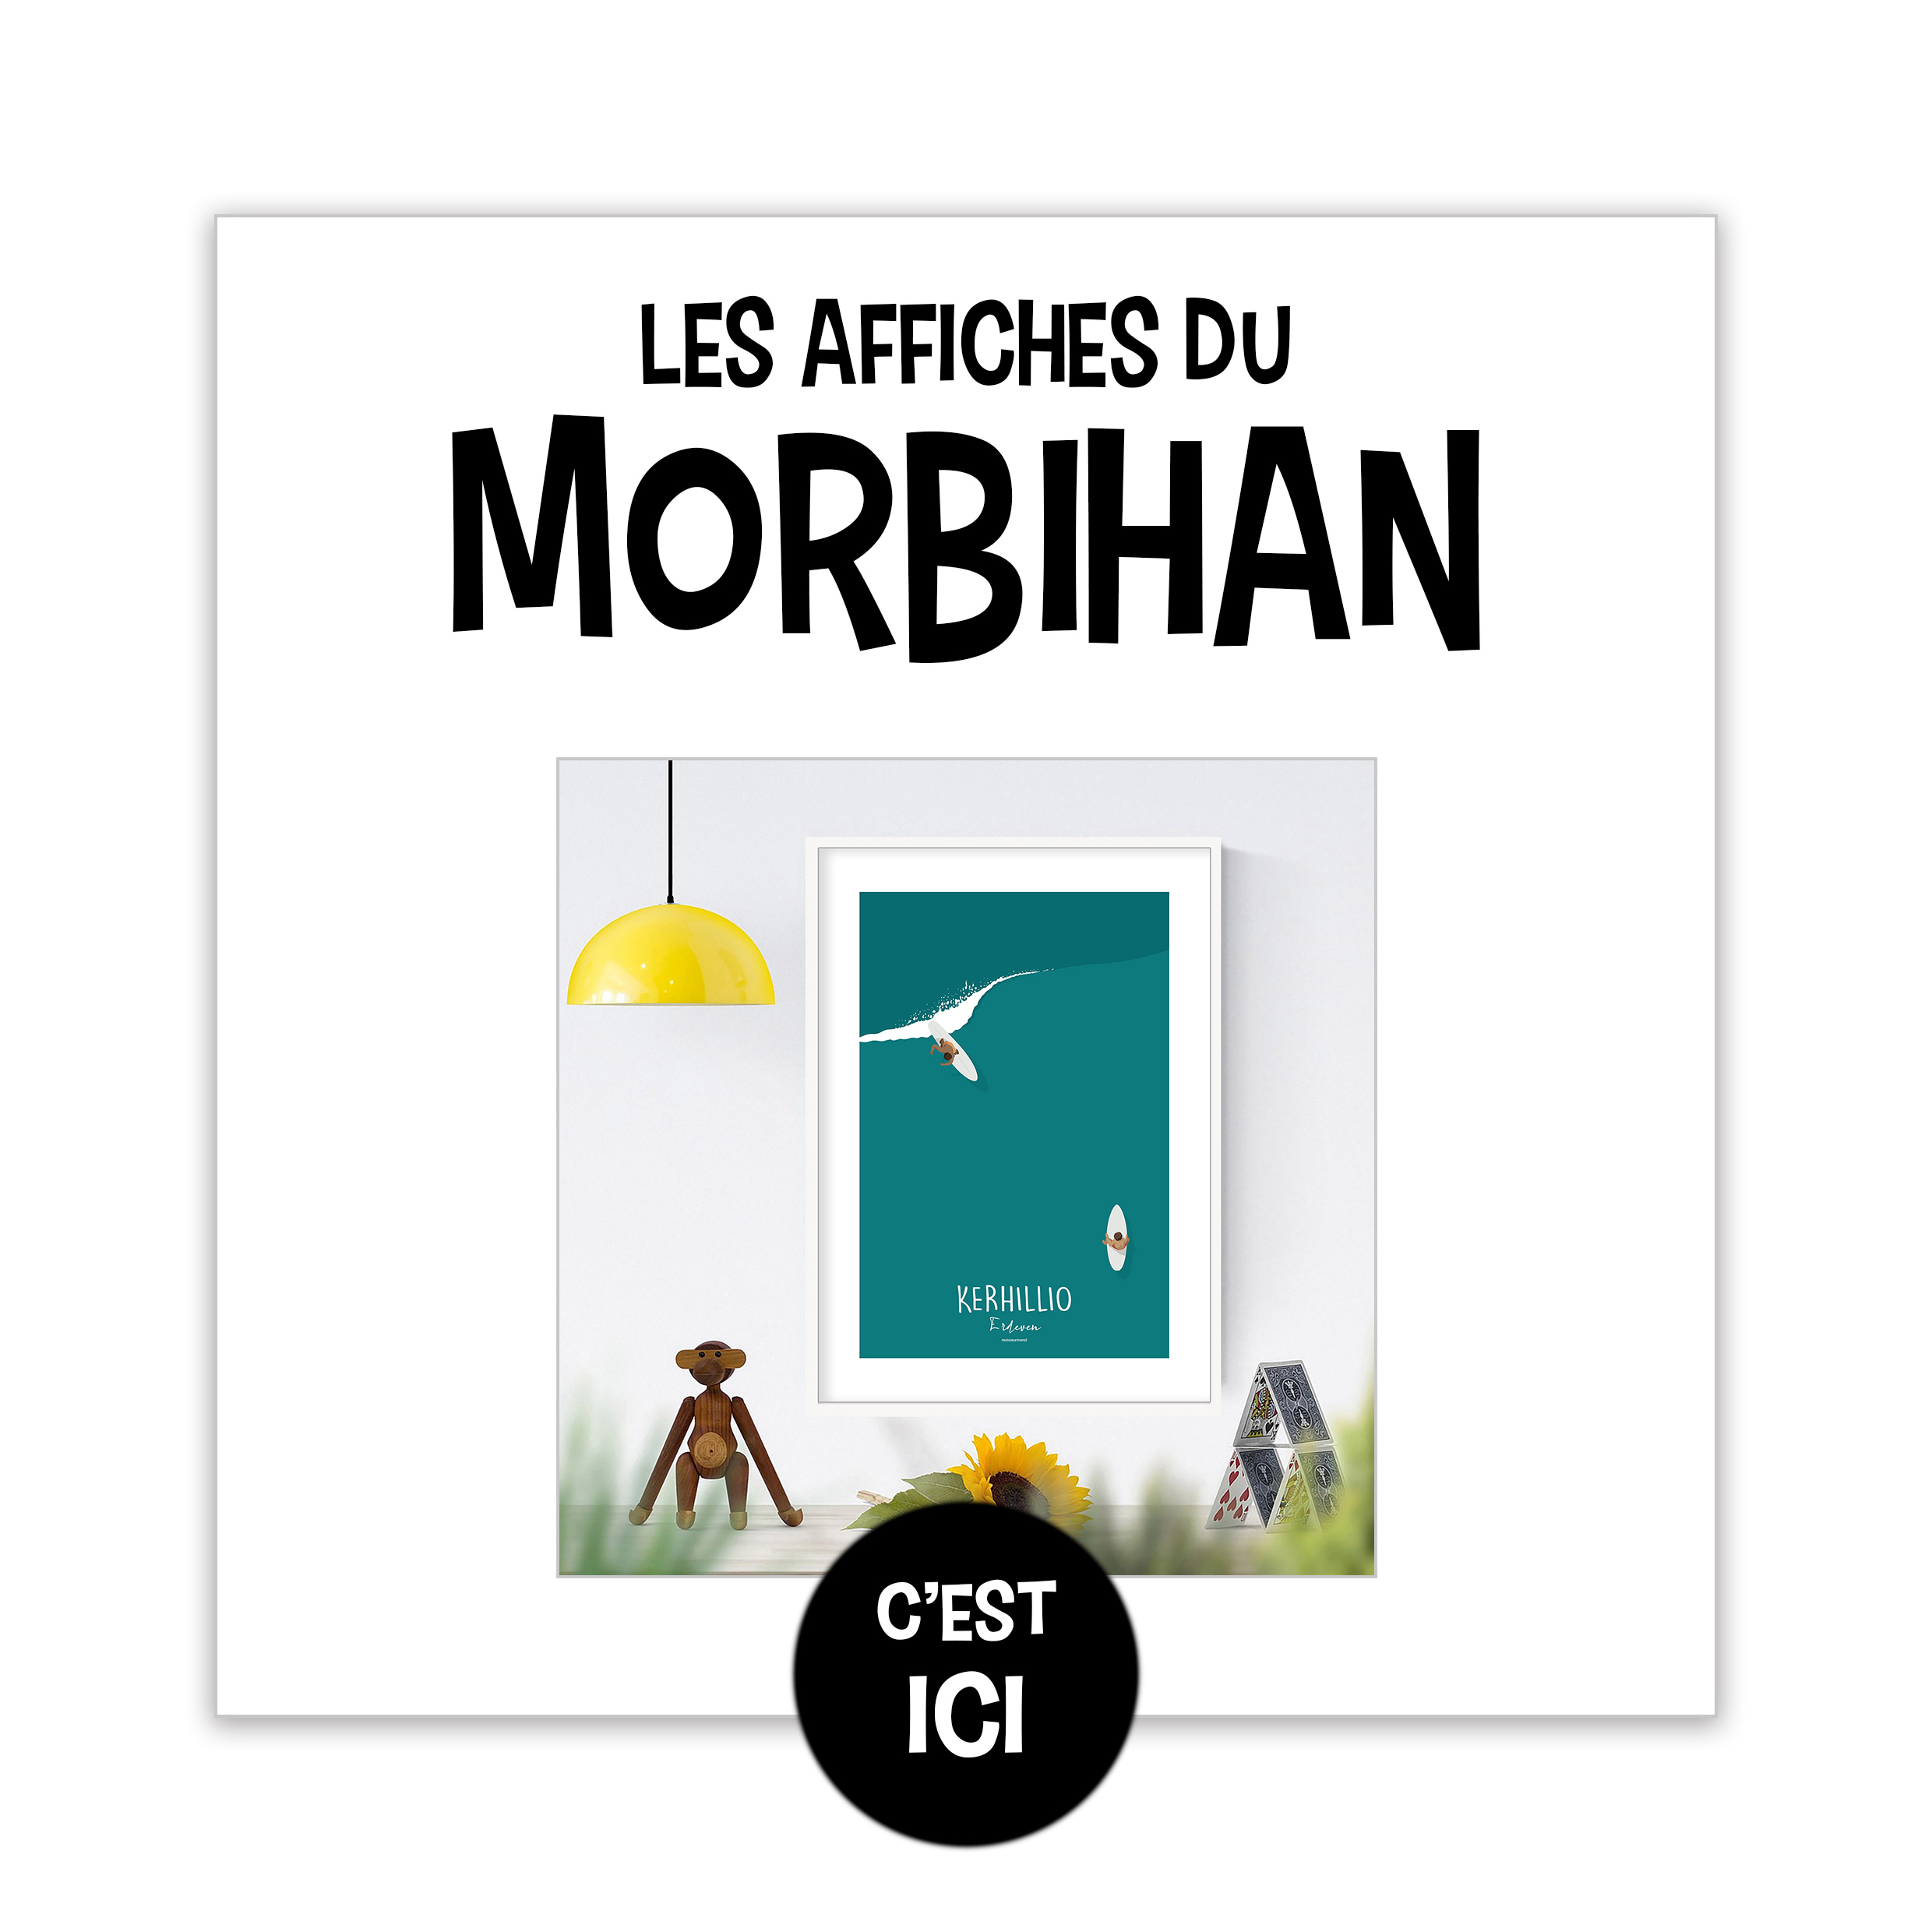 Les affiches du Morbihan